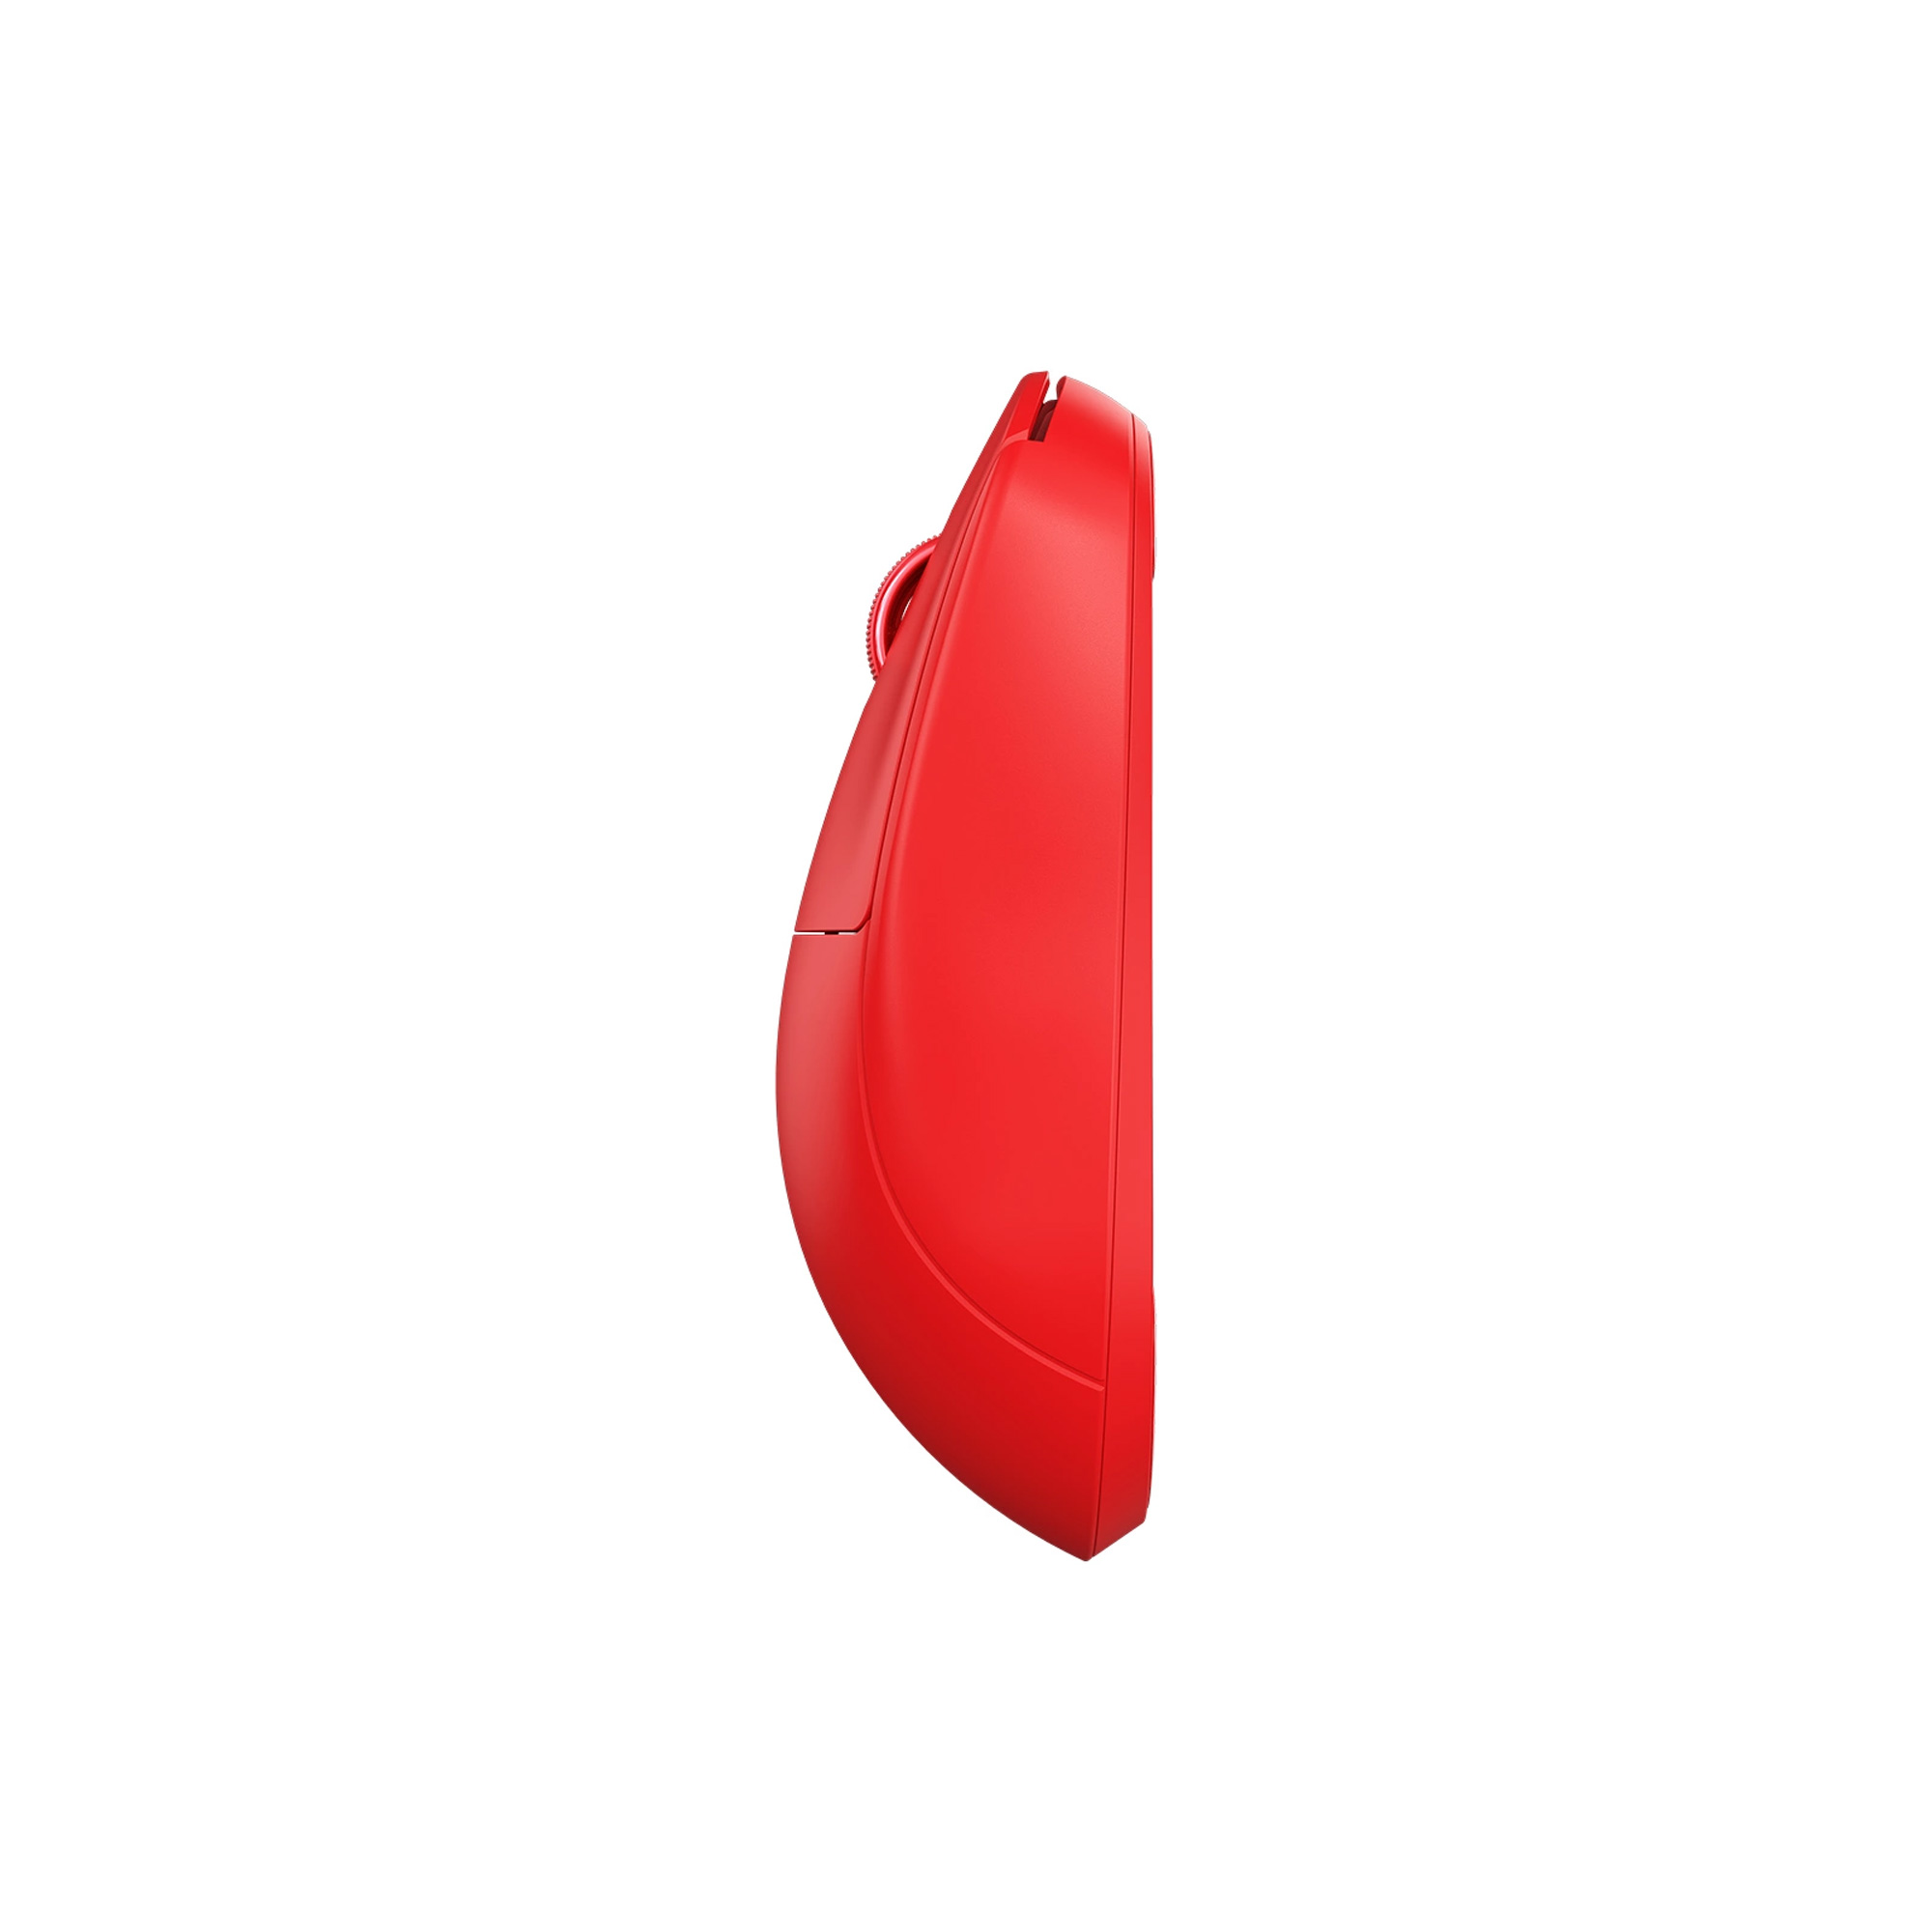 Мышь Pulsar X2 Wireless All Red Edition LTD Red - фото 4